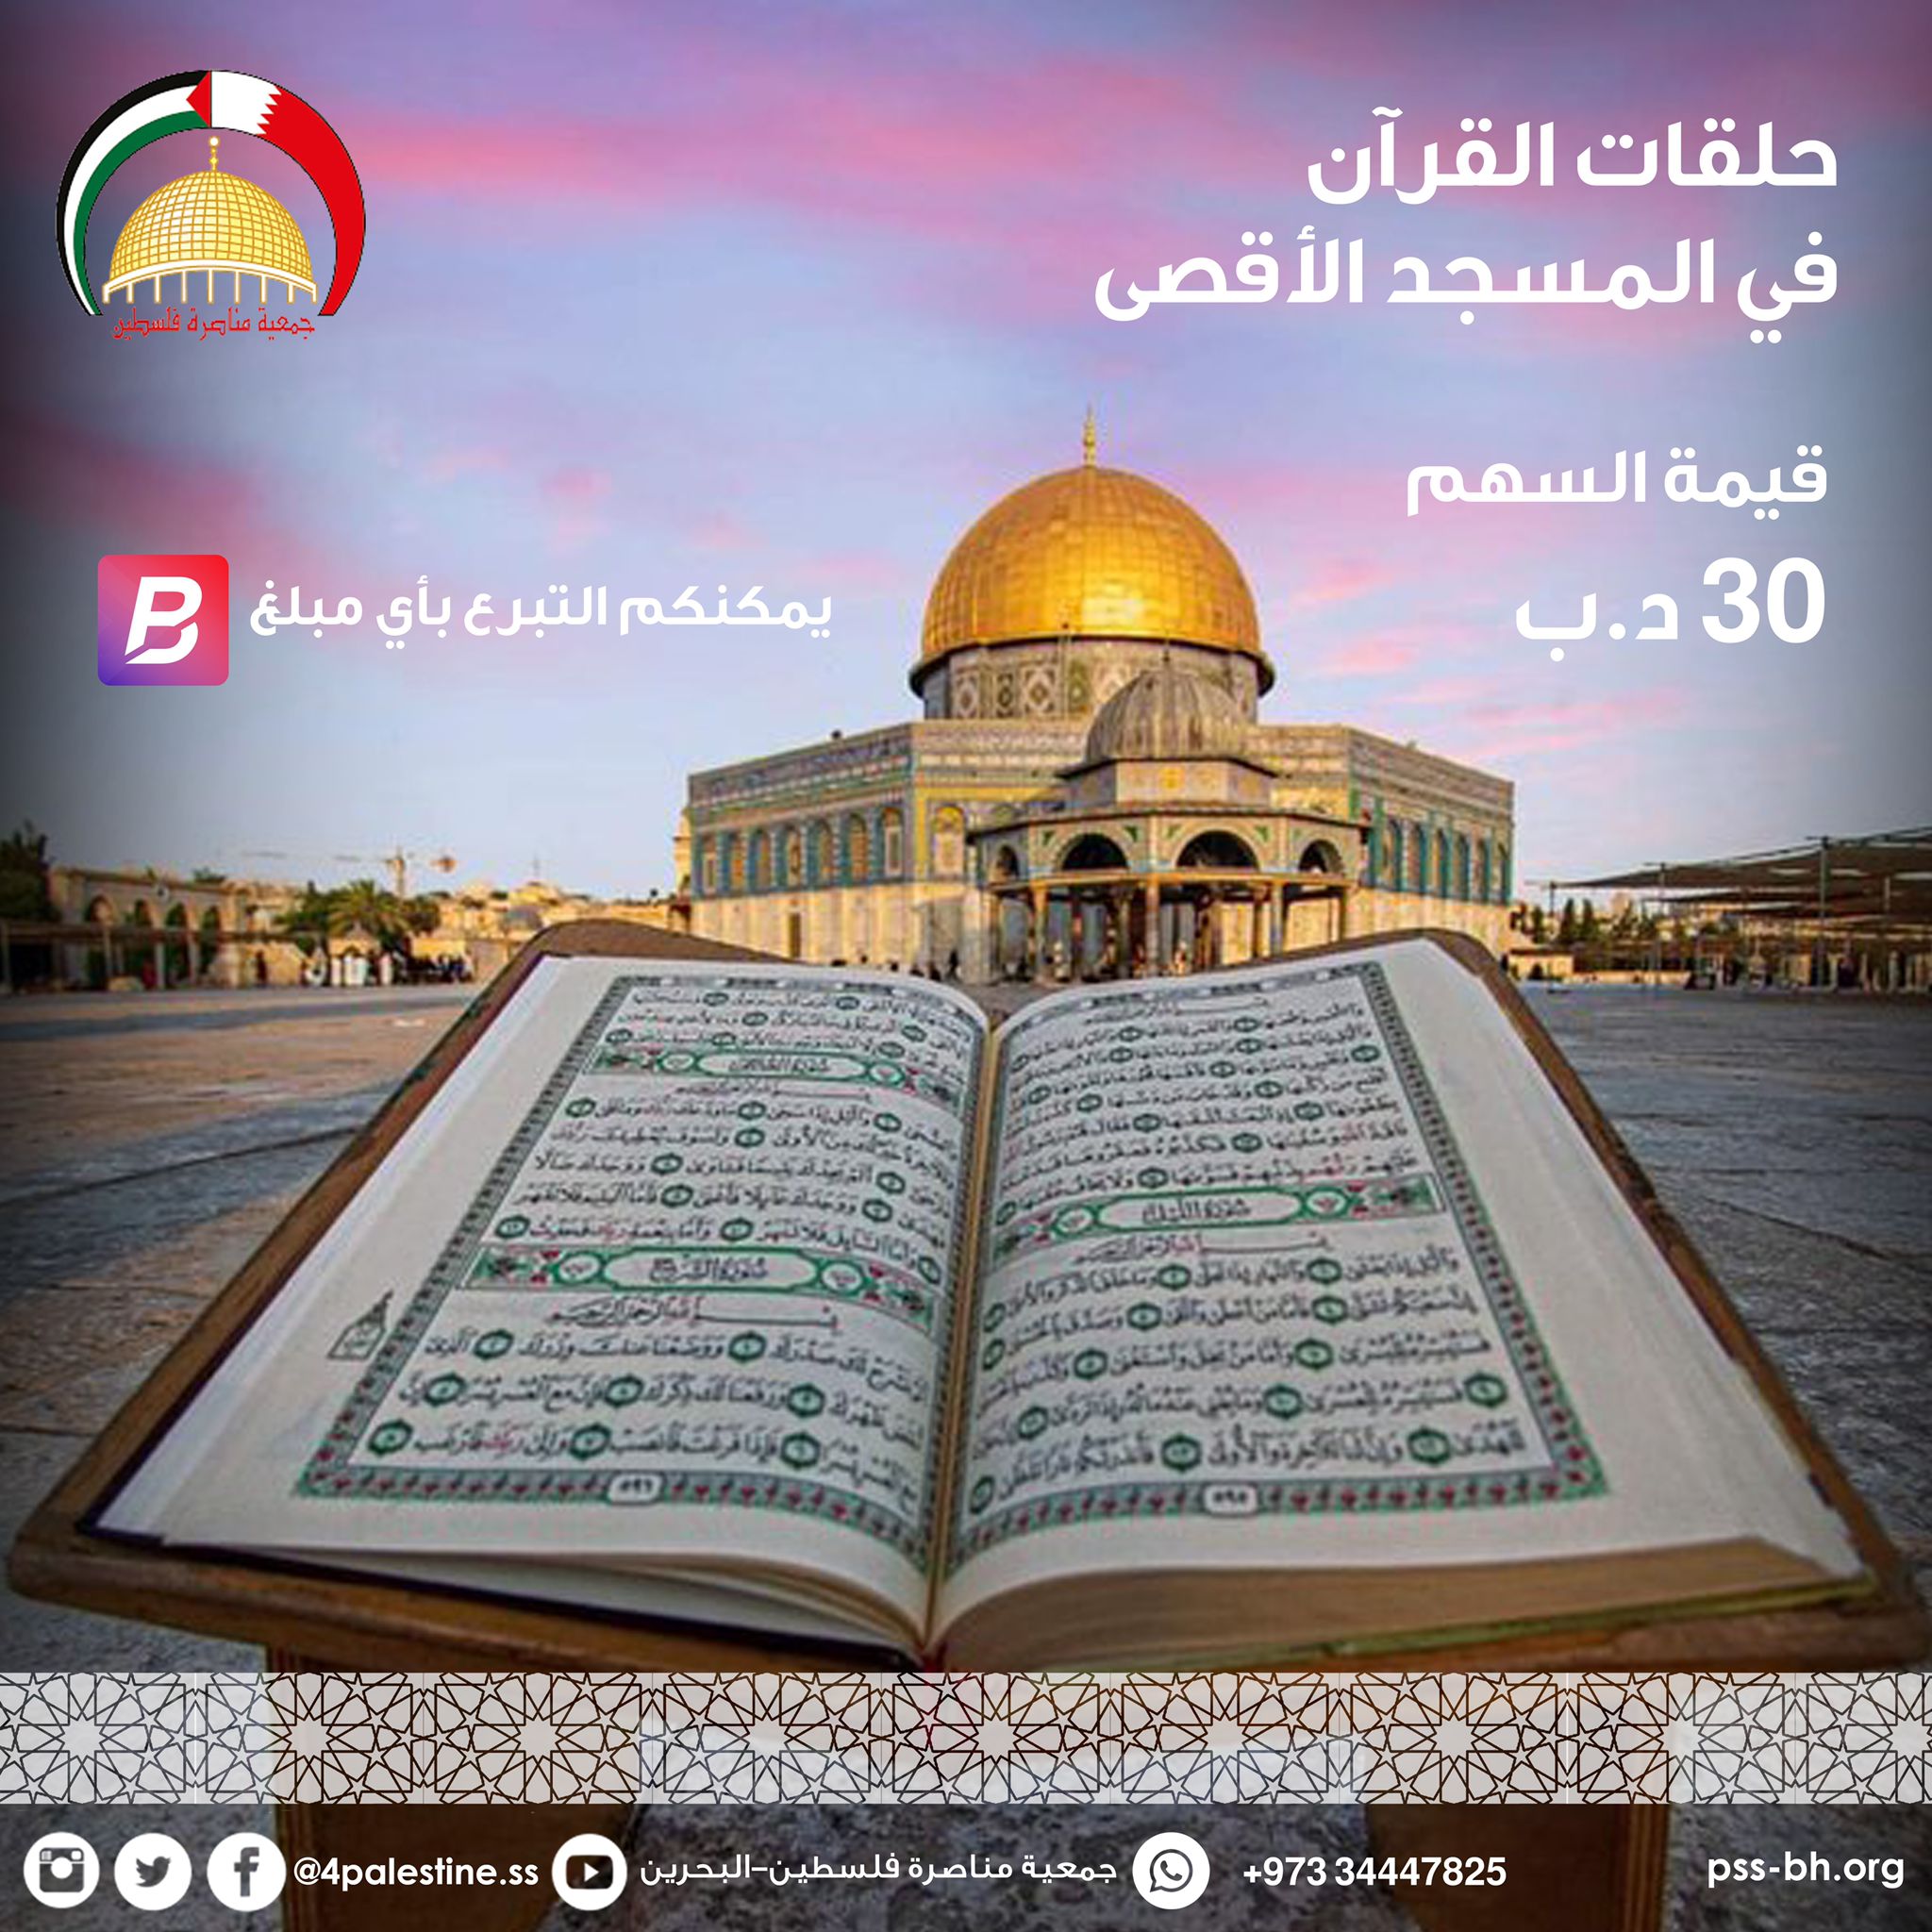 Quran lessons at Al-Aqsa